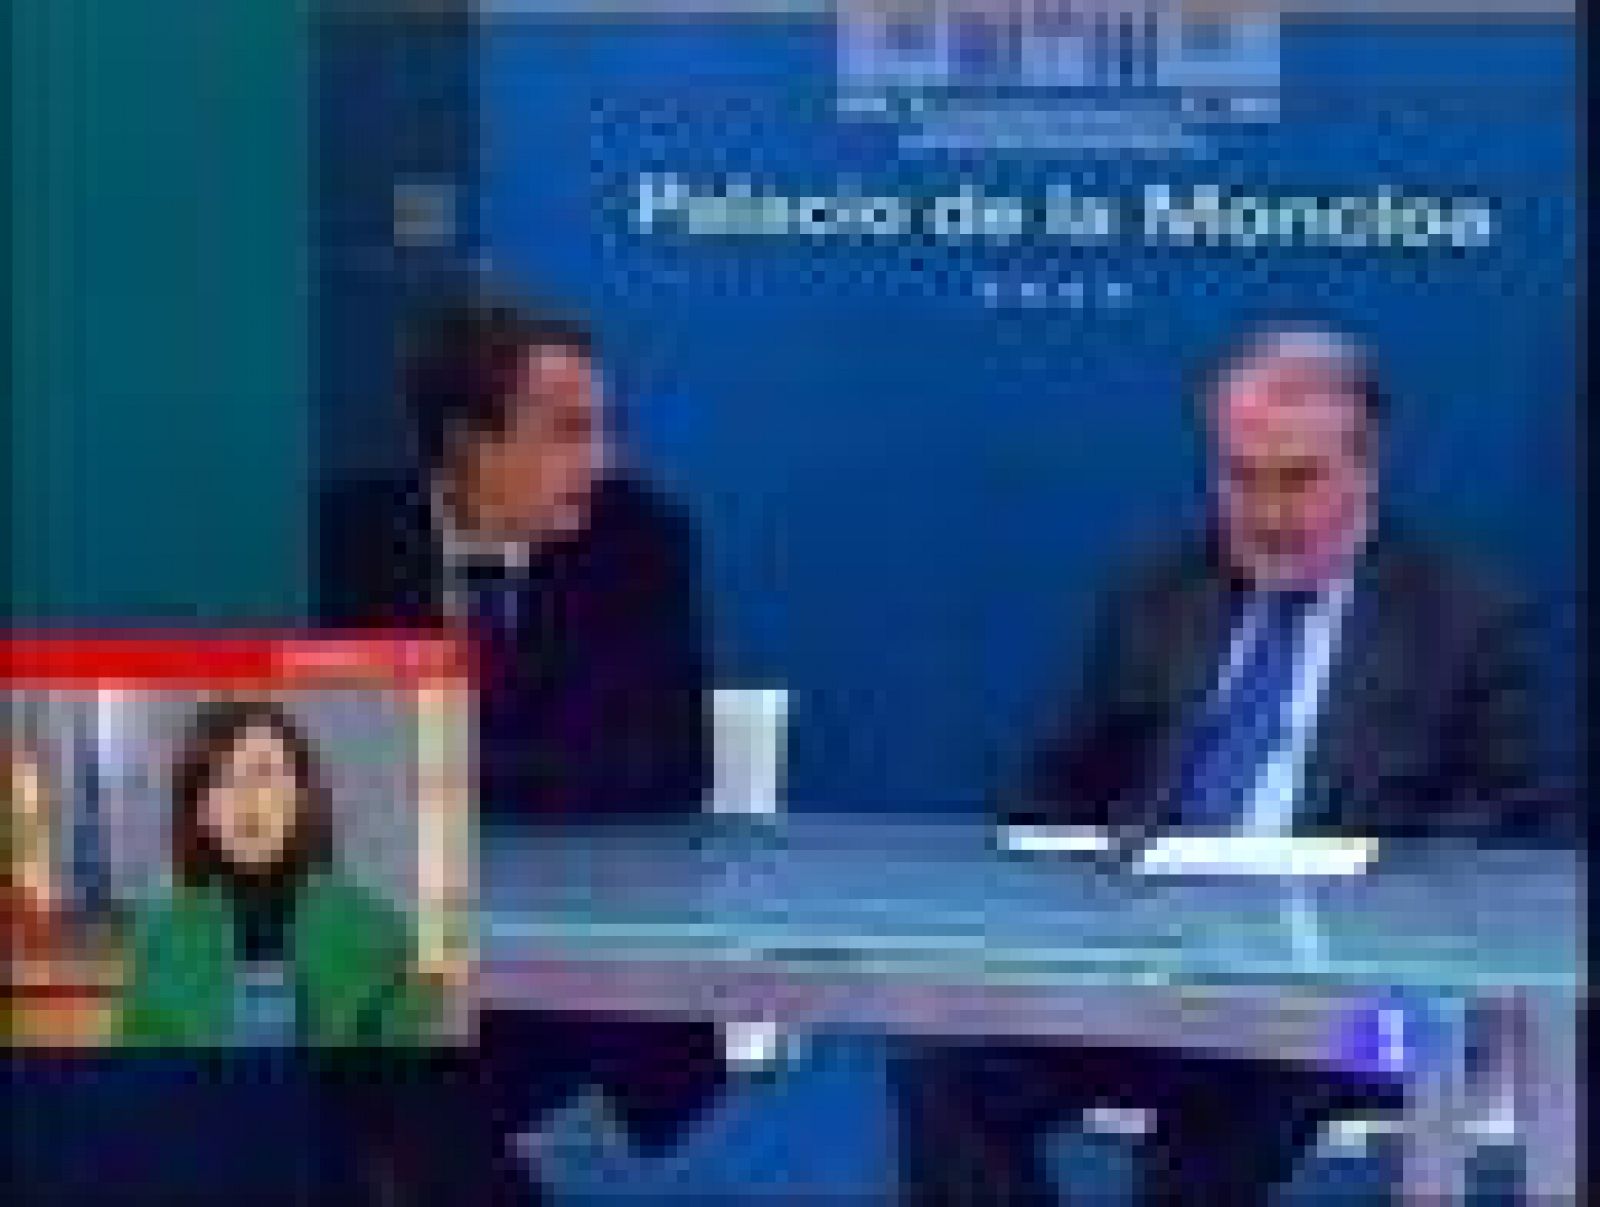 El Presidente del Gobierno, José Luis Rodríguez Zapatero, se ha reunido en La Moncloa con los principales banqueros del país para reclamar más facilidades en la concesión de créditos.